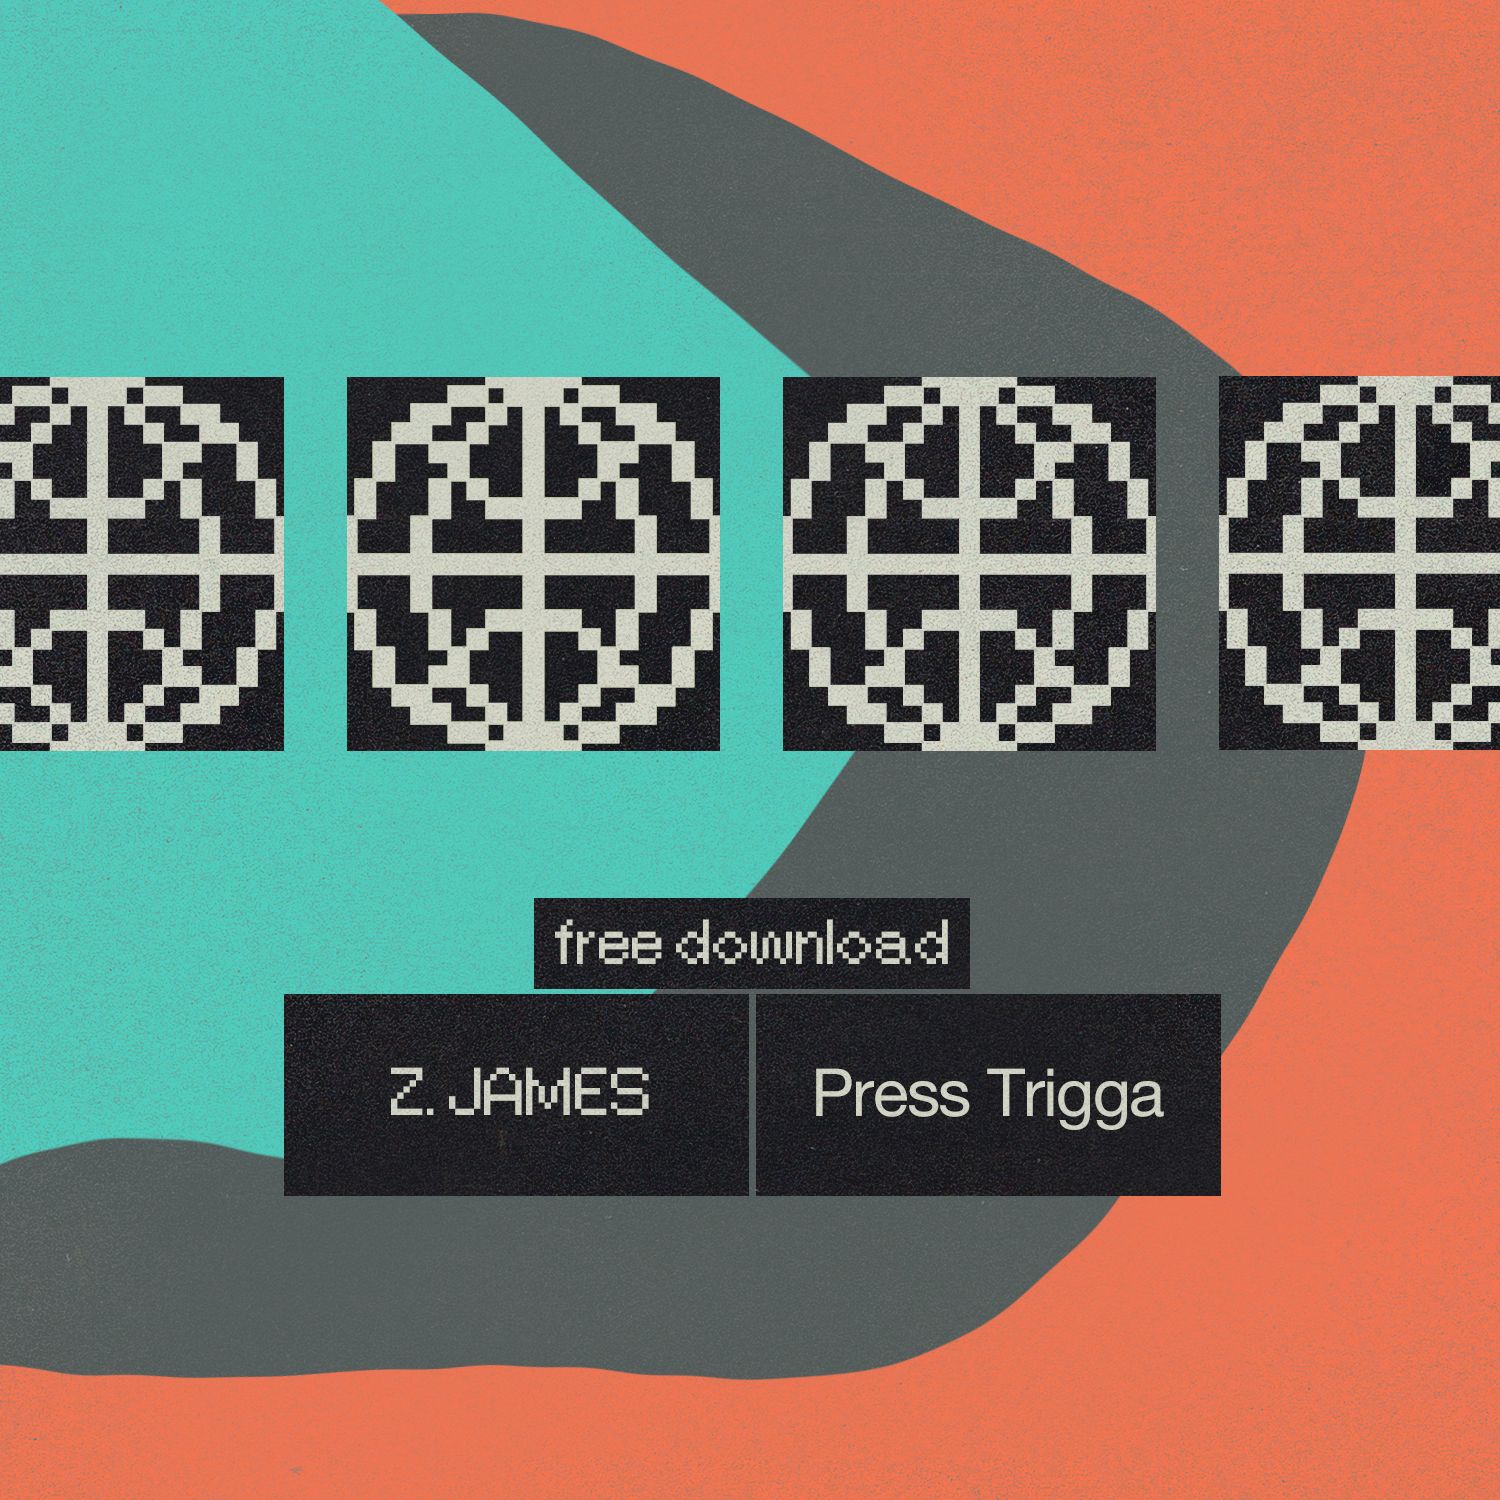 डाउनलोड करा Z.James - Press Trigga [Free DL]